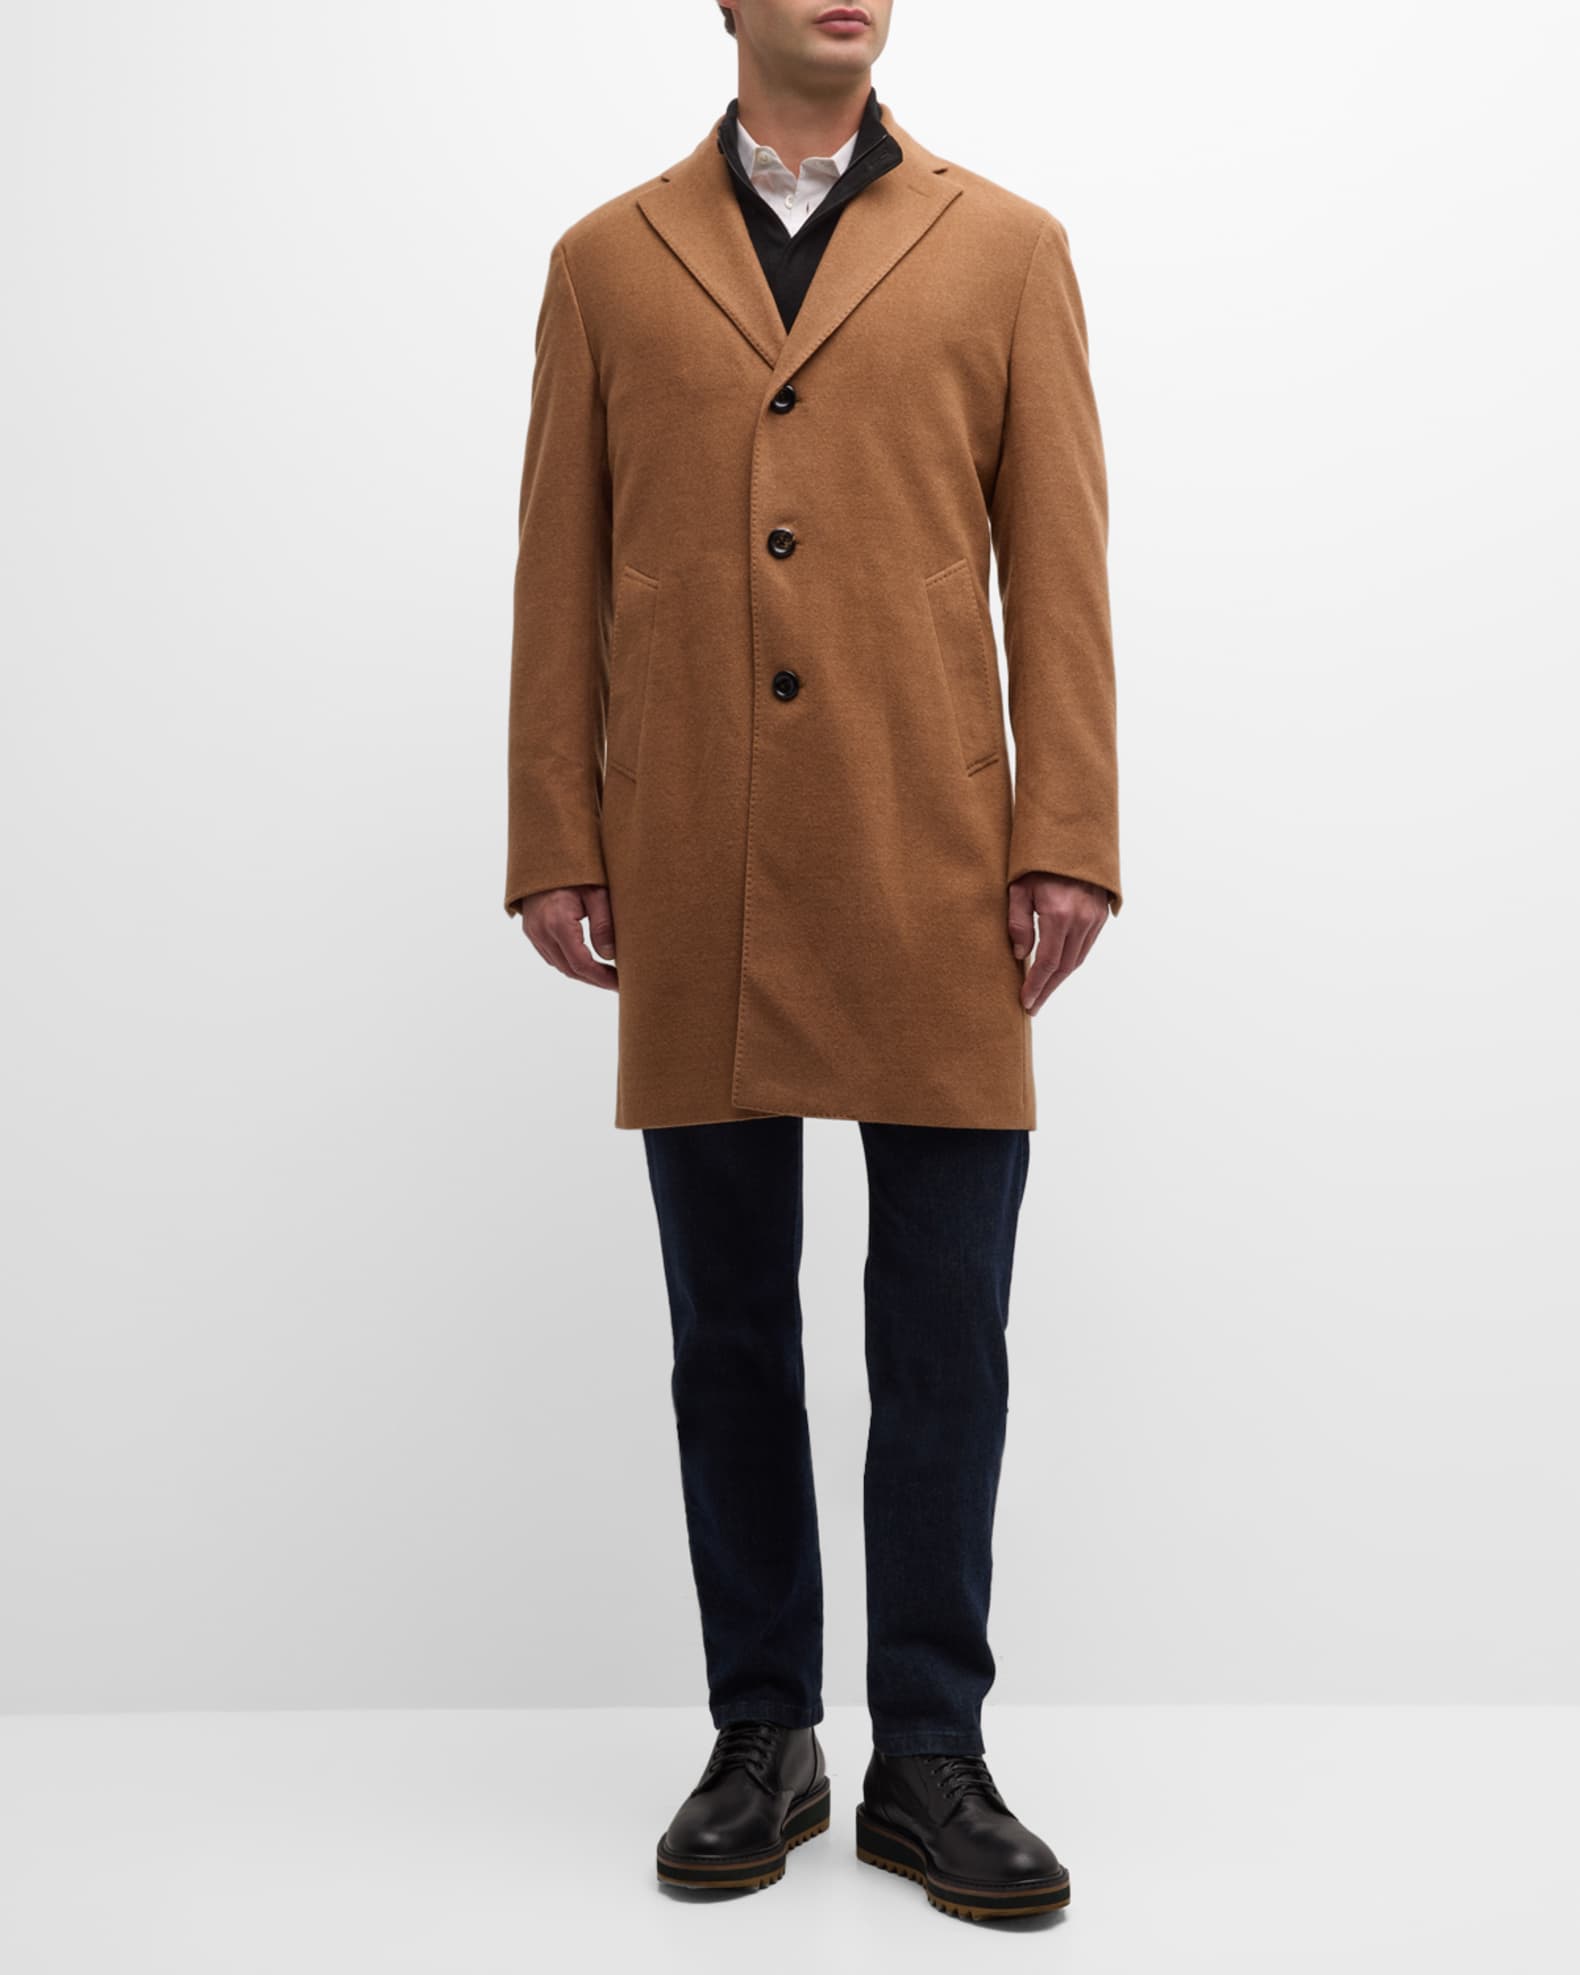 Neiman Marcus Men's 14.5 Micron Wool Topcoat | Neiman Marcus